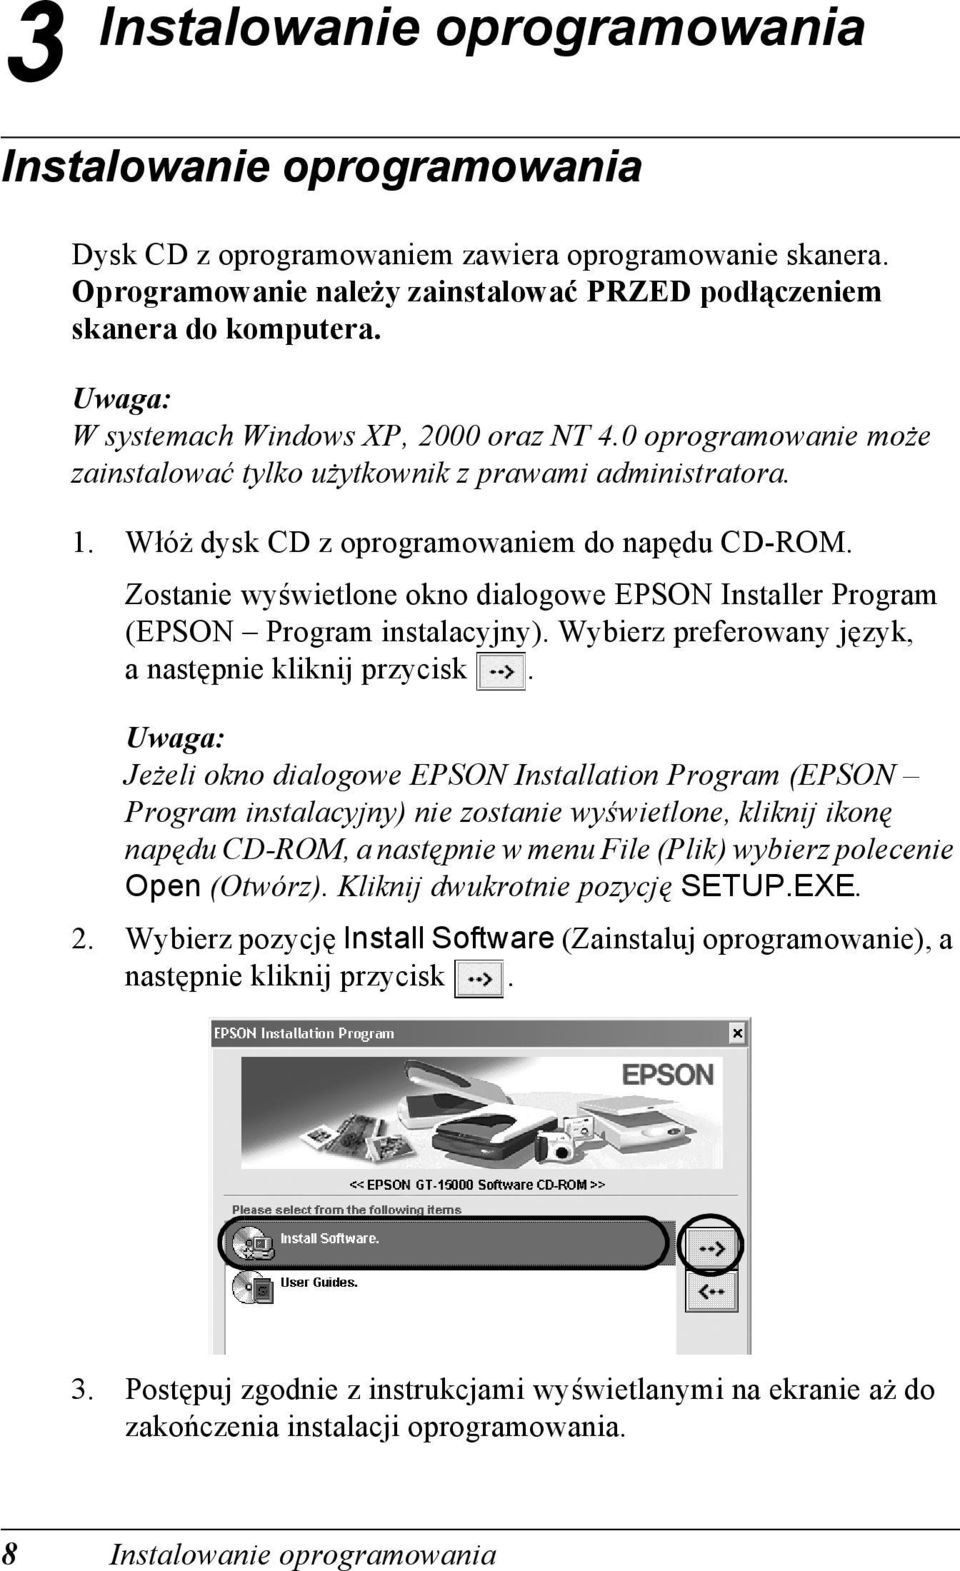 Zostanie wyświetlone okno dialogowe EPSON Installer Program (EPSON Program instalacyjny). Wybierz preferowany język, anastępnie kliknij przycisk.